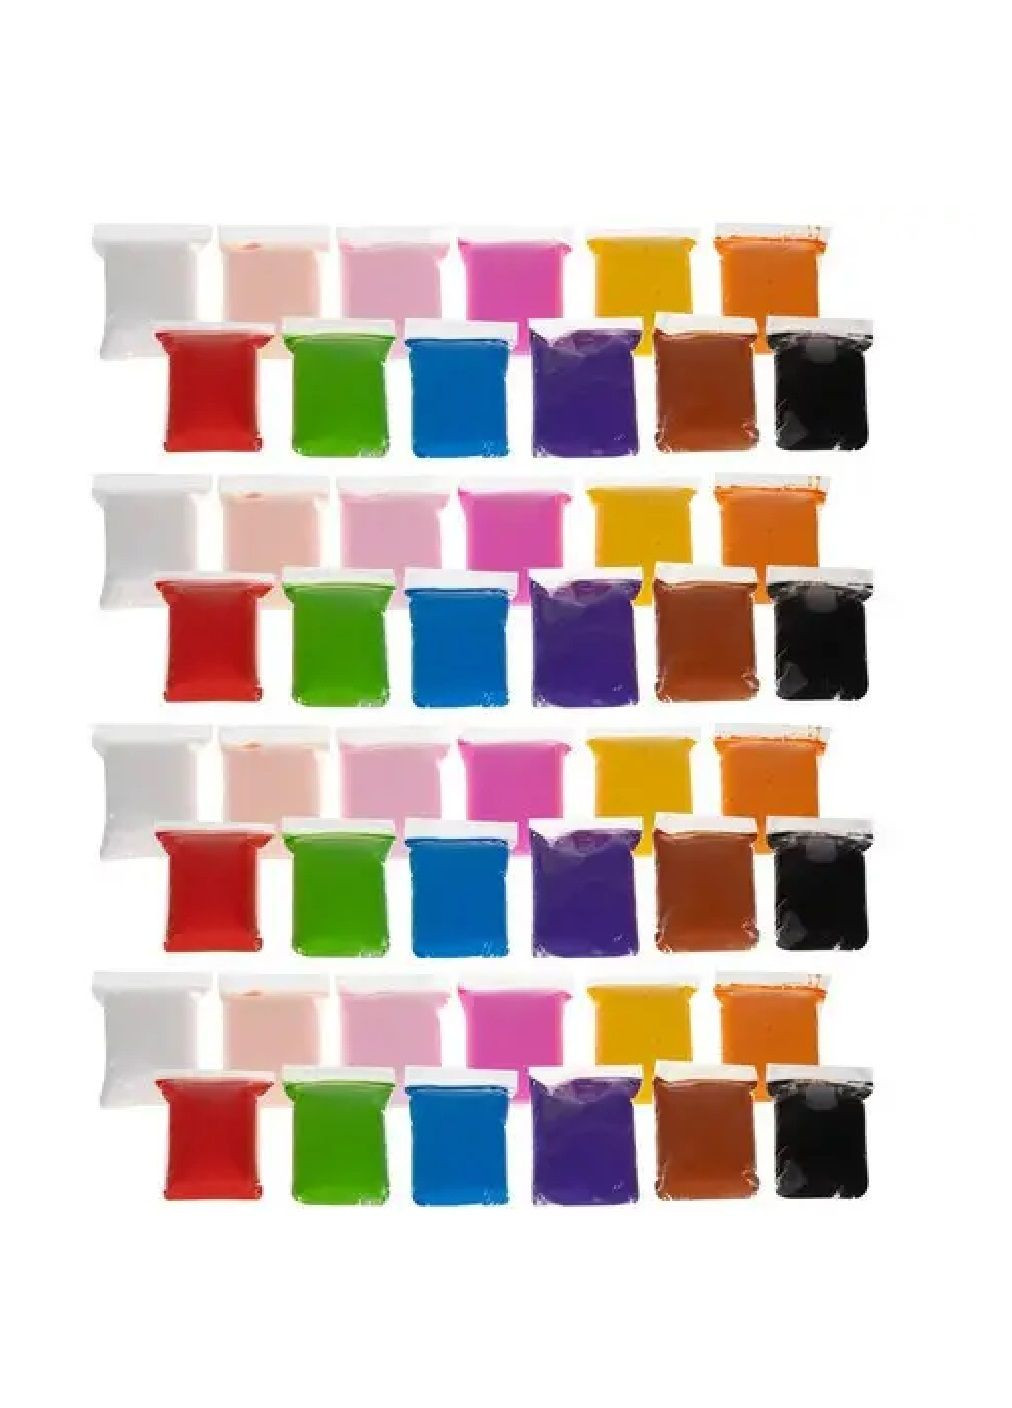 Набор комплект для лепки воздушный пластилин пенопластилин с аксессуарами инструментами 48 шт 12 цветов (476648-Prob) Unbranded (285799456)